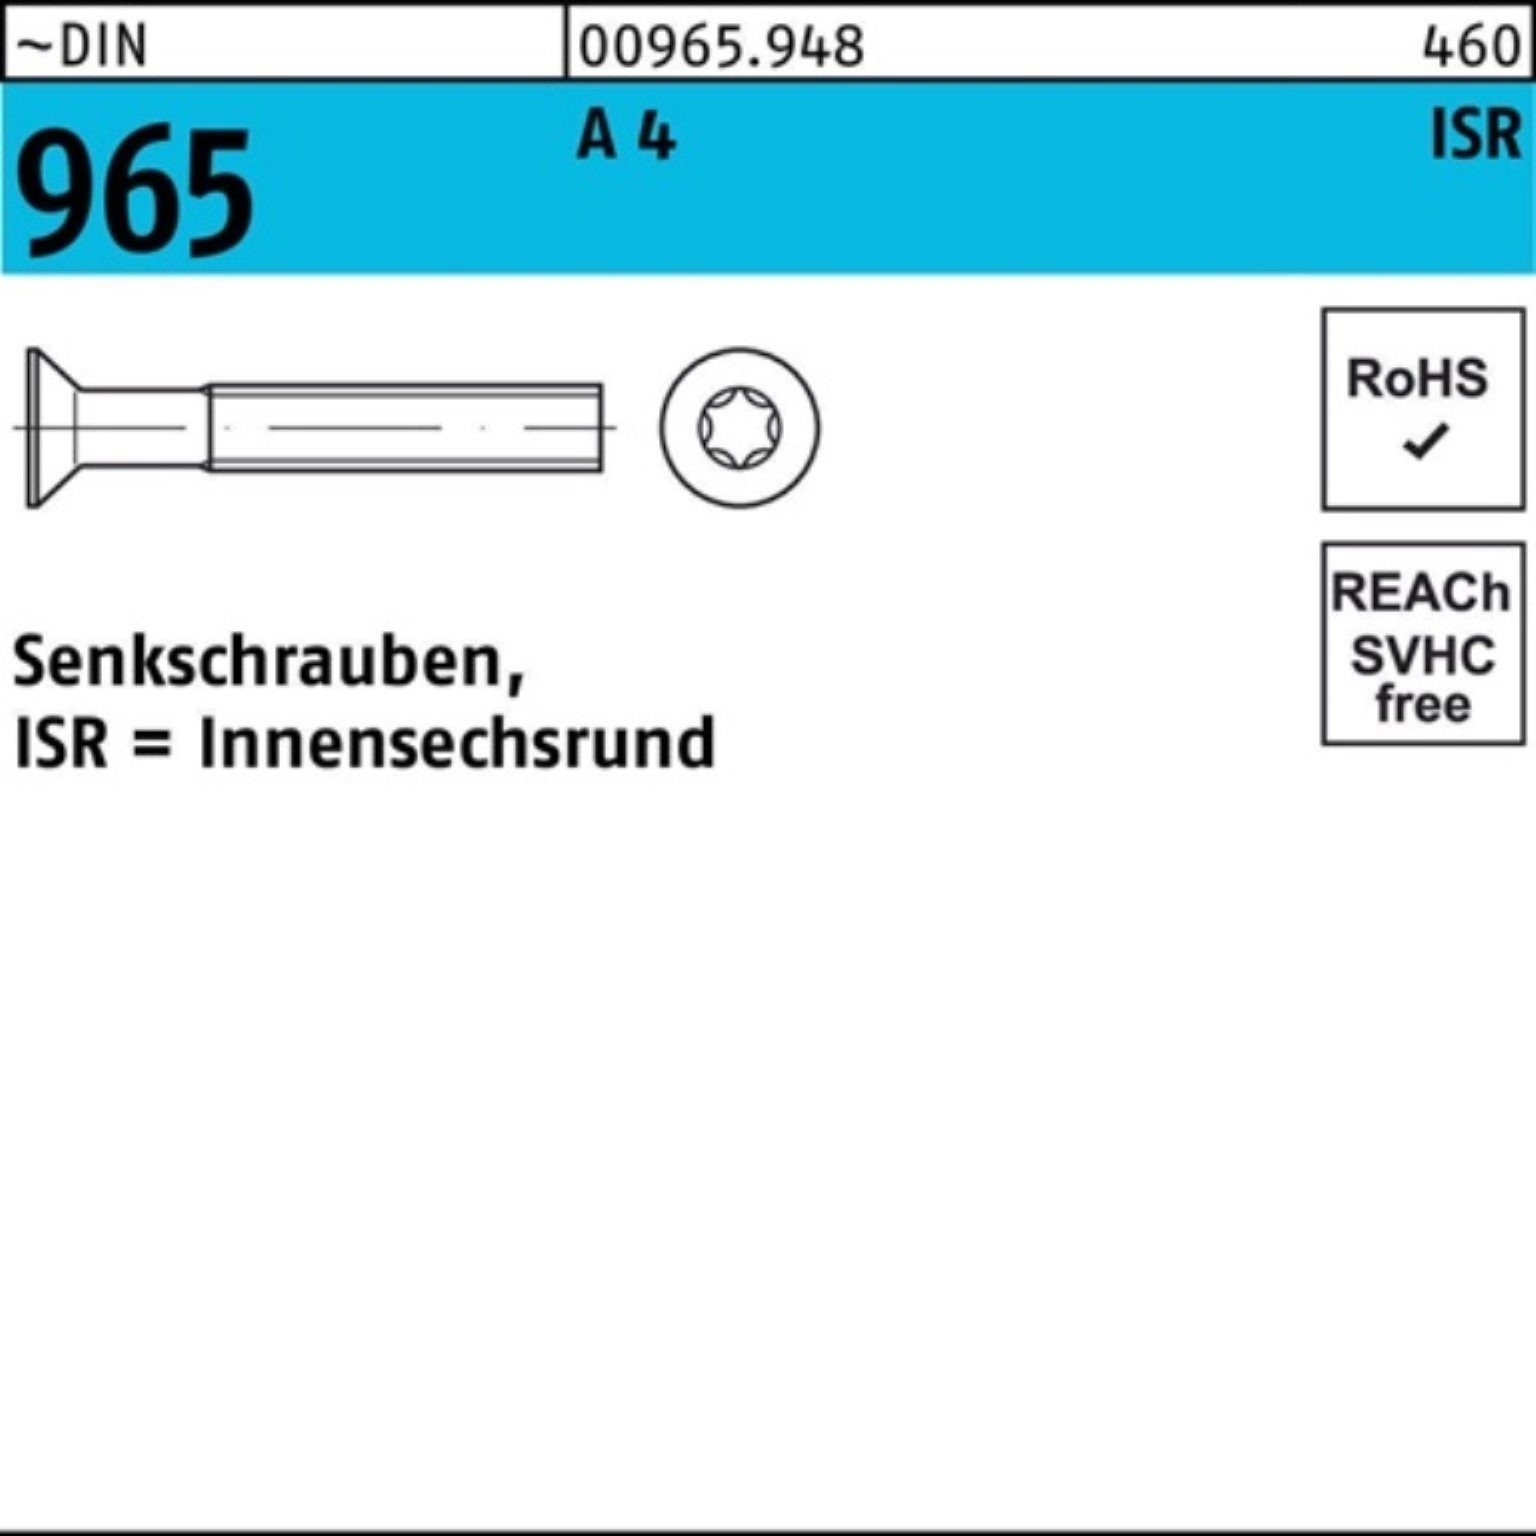 Reyher Senkschraube ISR DIN 1000 Pack 9 1000er 4 965 M3x Senkschraube A Stück ~DIN 25-T10